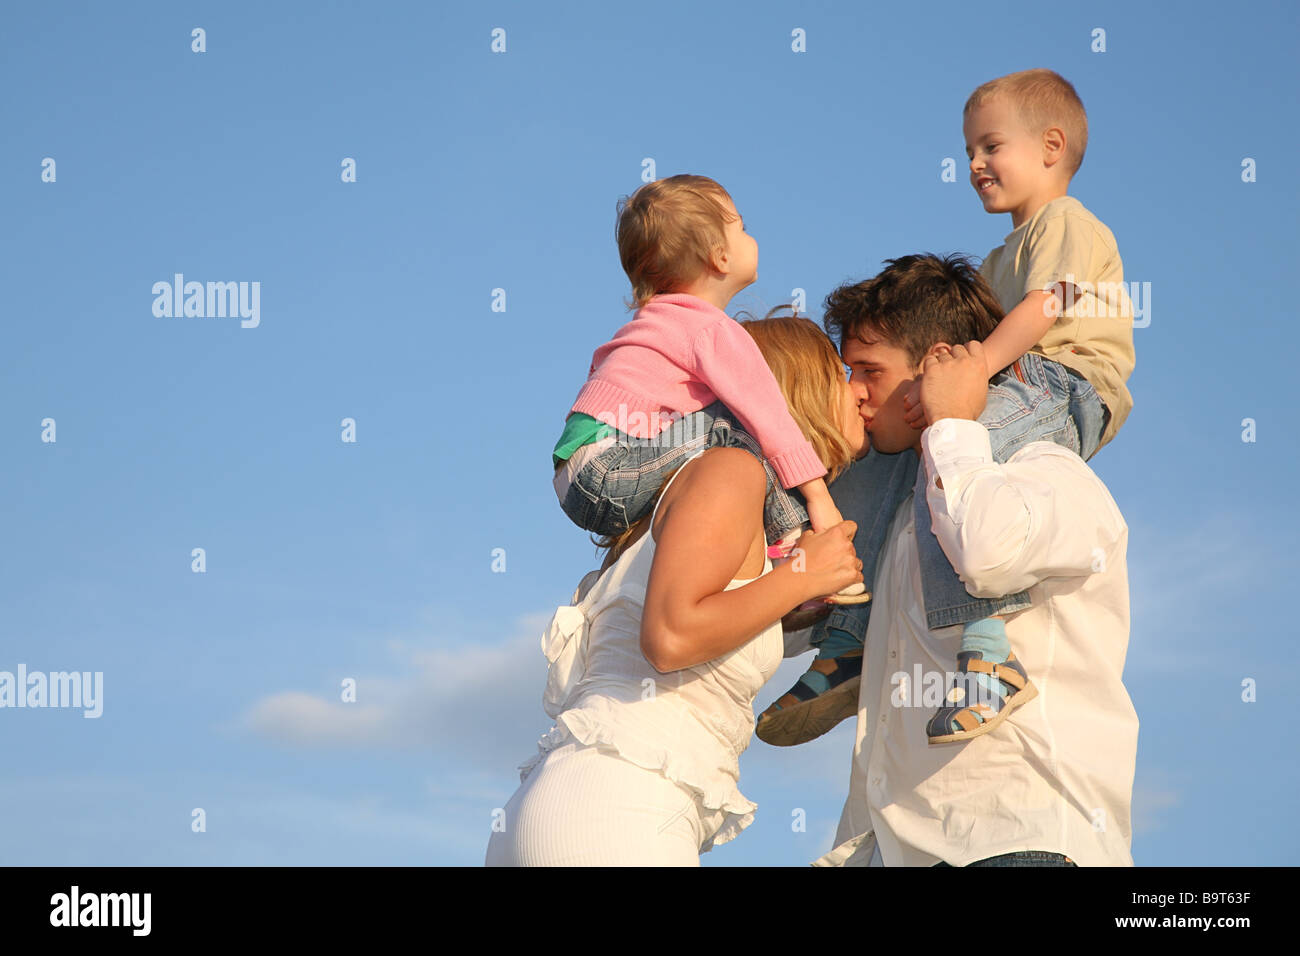 Мама папа поцелуй. Семья с ребенком мальчиком. Семья мальчик и девочка. Дети на плечах у родителей. Семья двое детей мальчик и девочка.